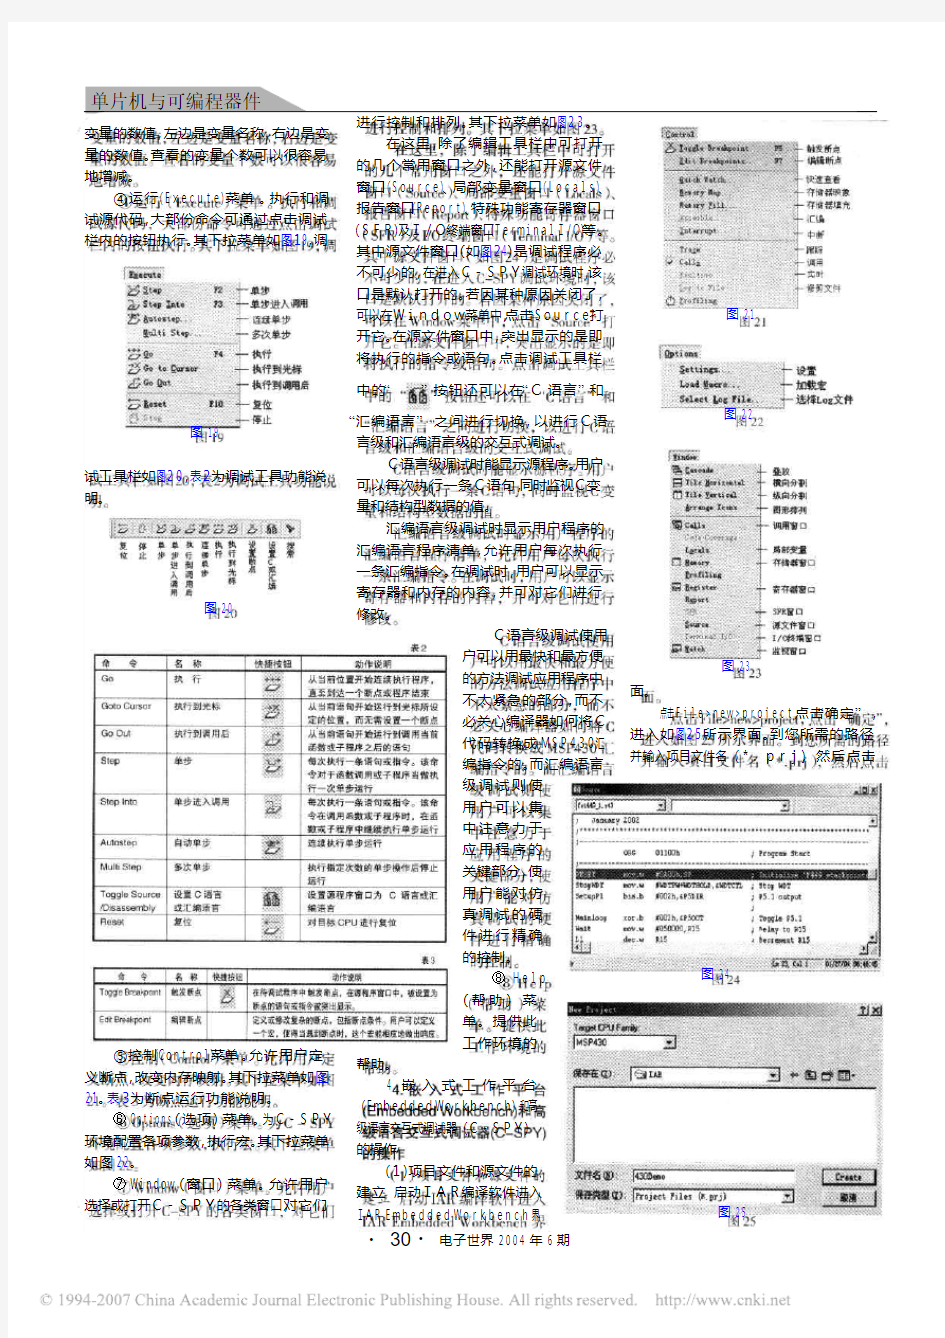 MSP430单片机实用技术讲座(6) 第3讲MSP430学习和调试系统的软件环境(下)